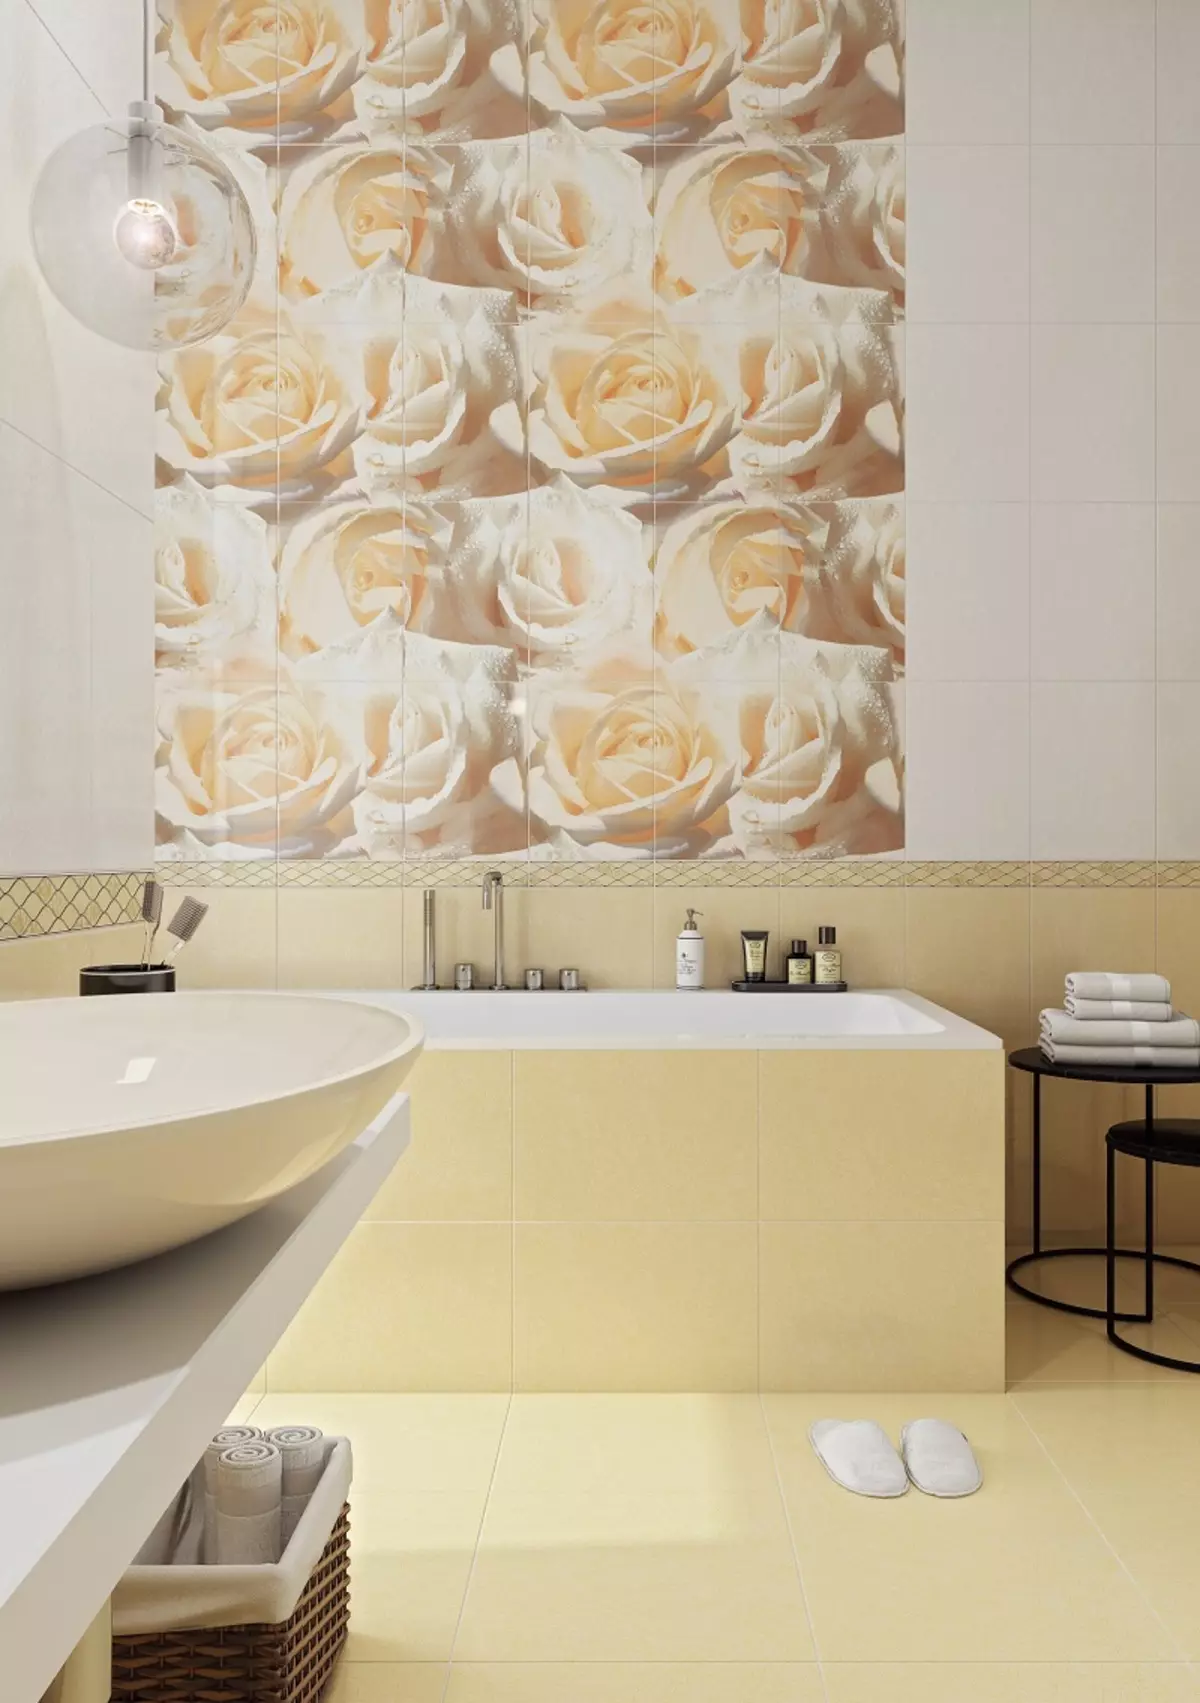 Tempes kamar mandi Rusia: keramik sareng ubin sanés pikeun kamar mandi produsén Rusia. Desain ubin produksi Rusia 10124_44